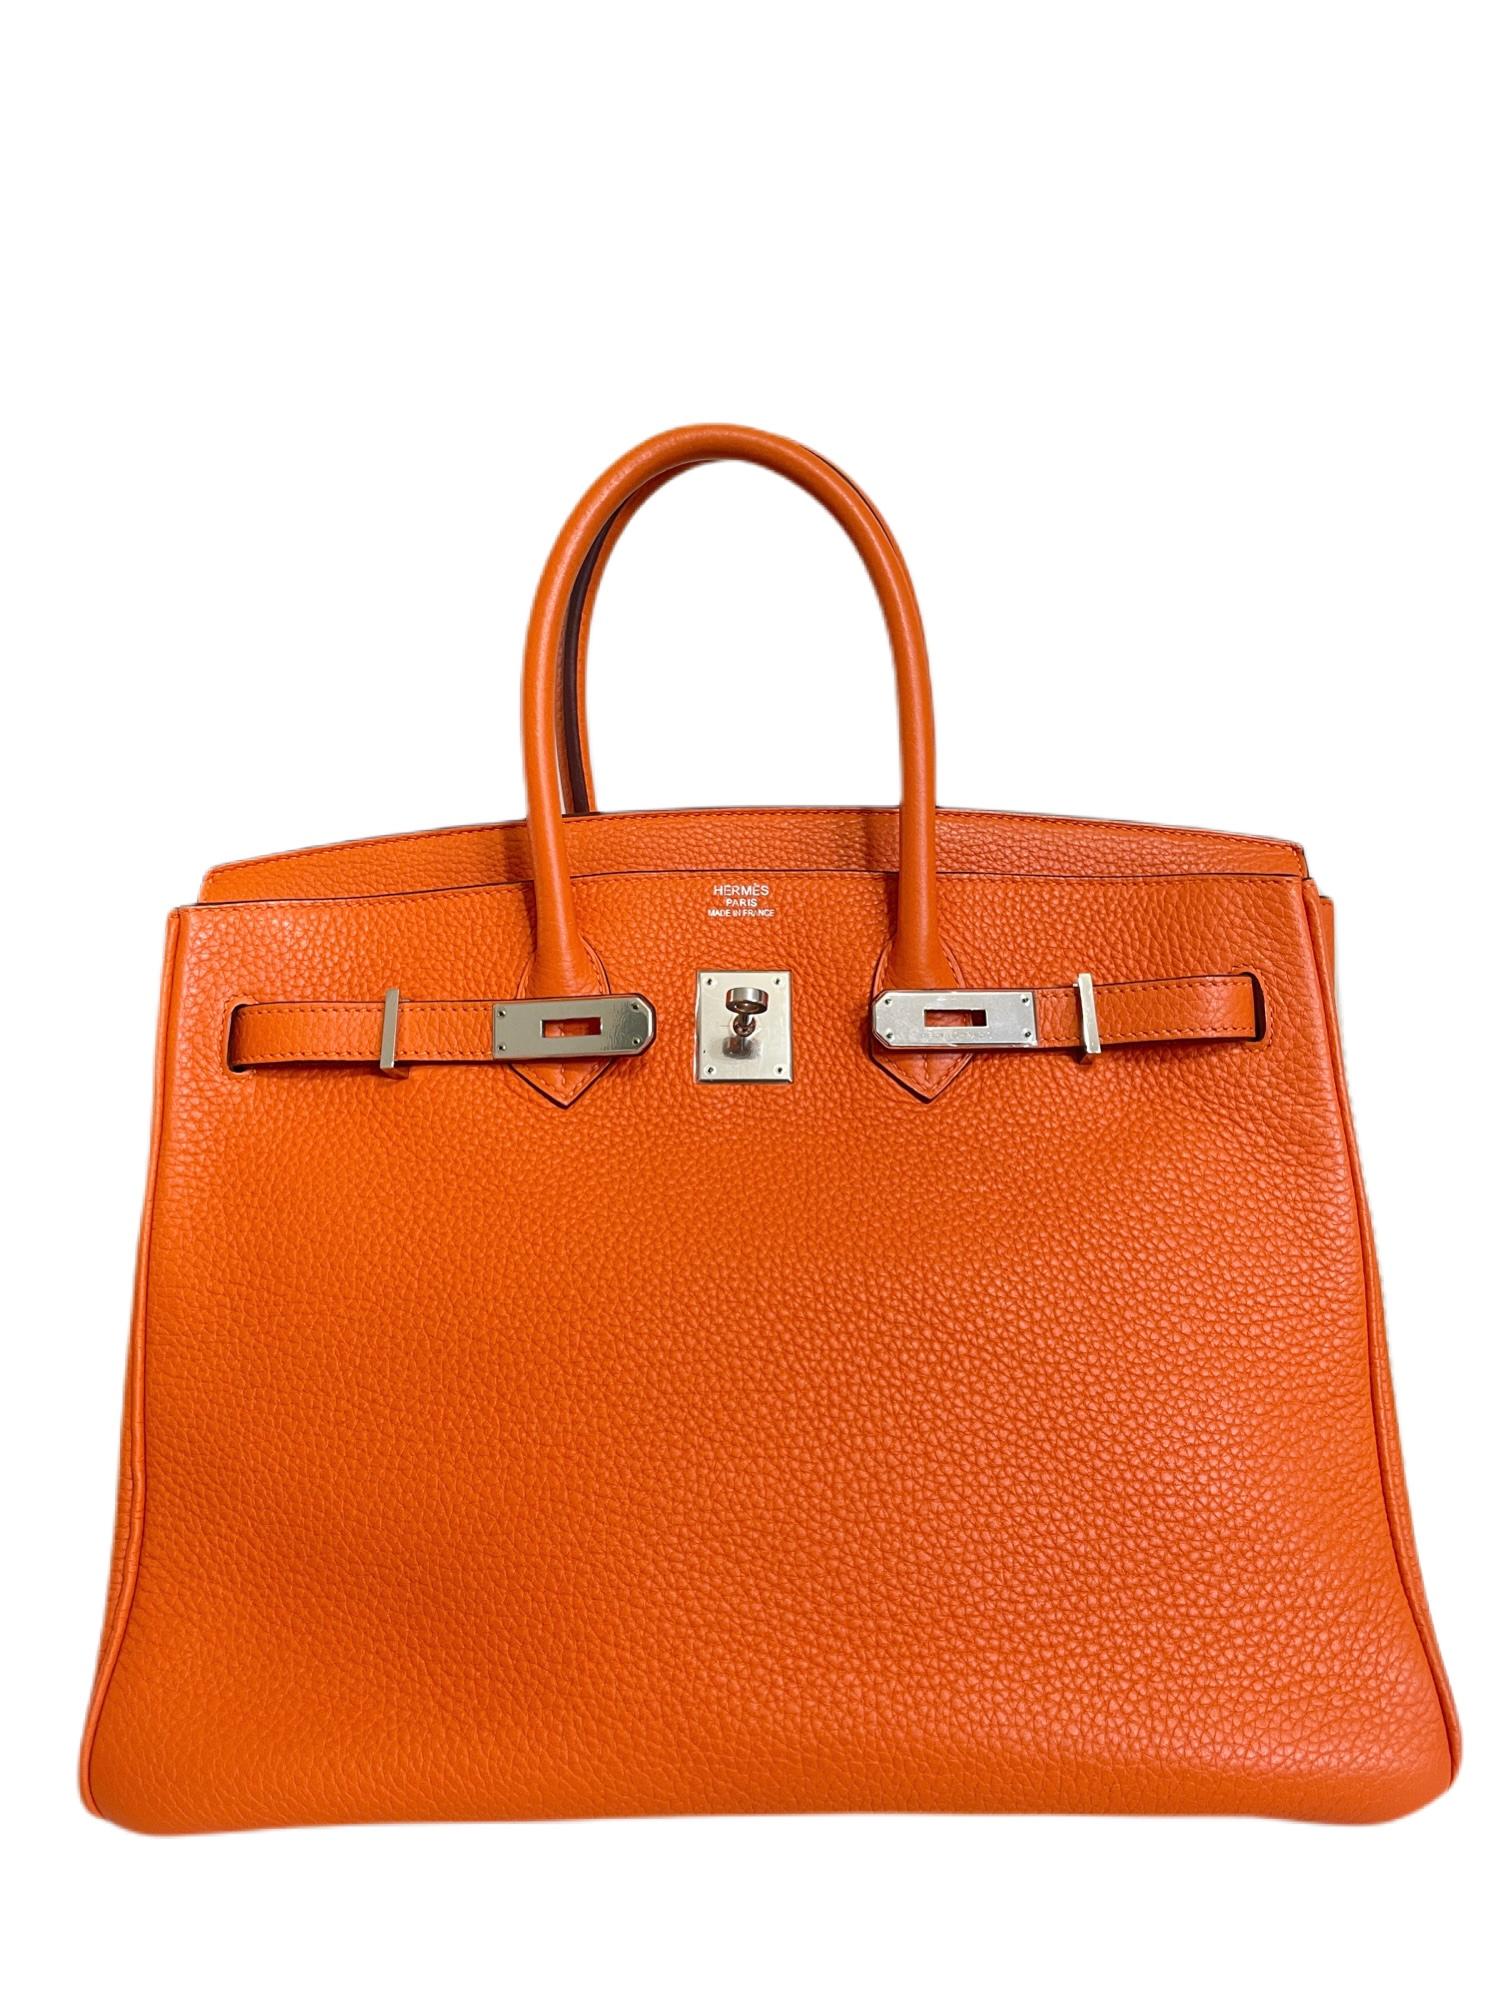 Hermès Orange Togo 35 cm Birkin with Palladium 1